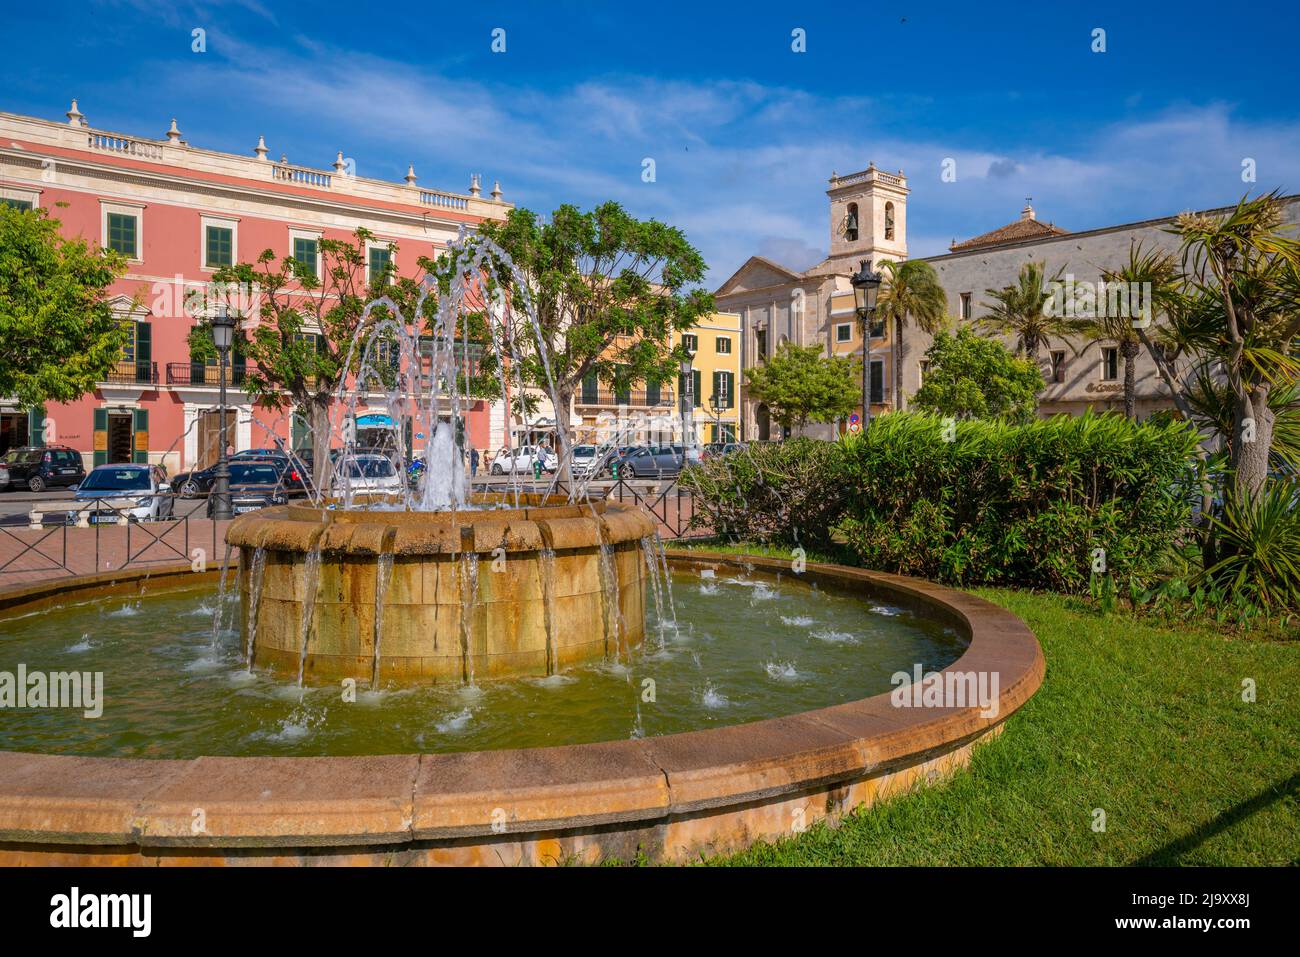 Vue sur l'architecture et la fontaine à Placa des Born, Ciutadella, Memorque, Iles Baléares, Espagne, Europe Banque D'Images